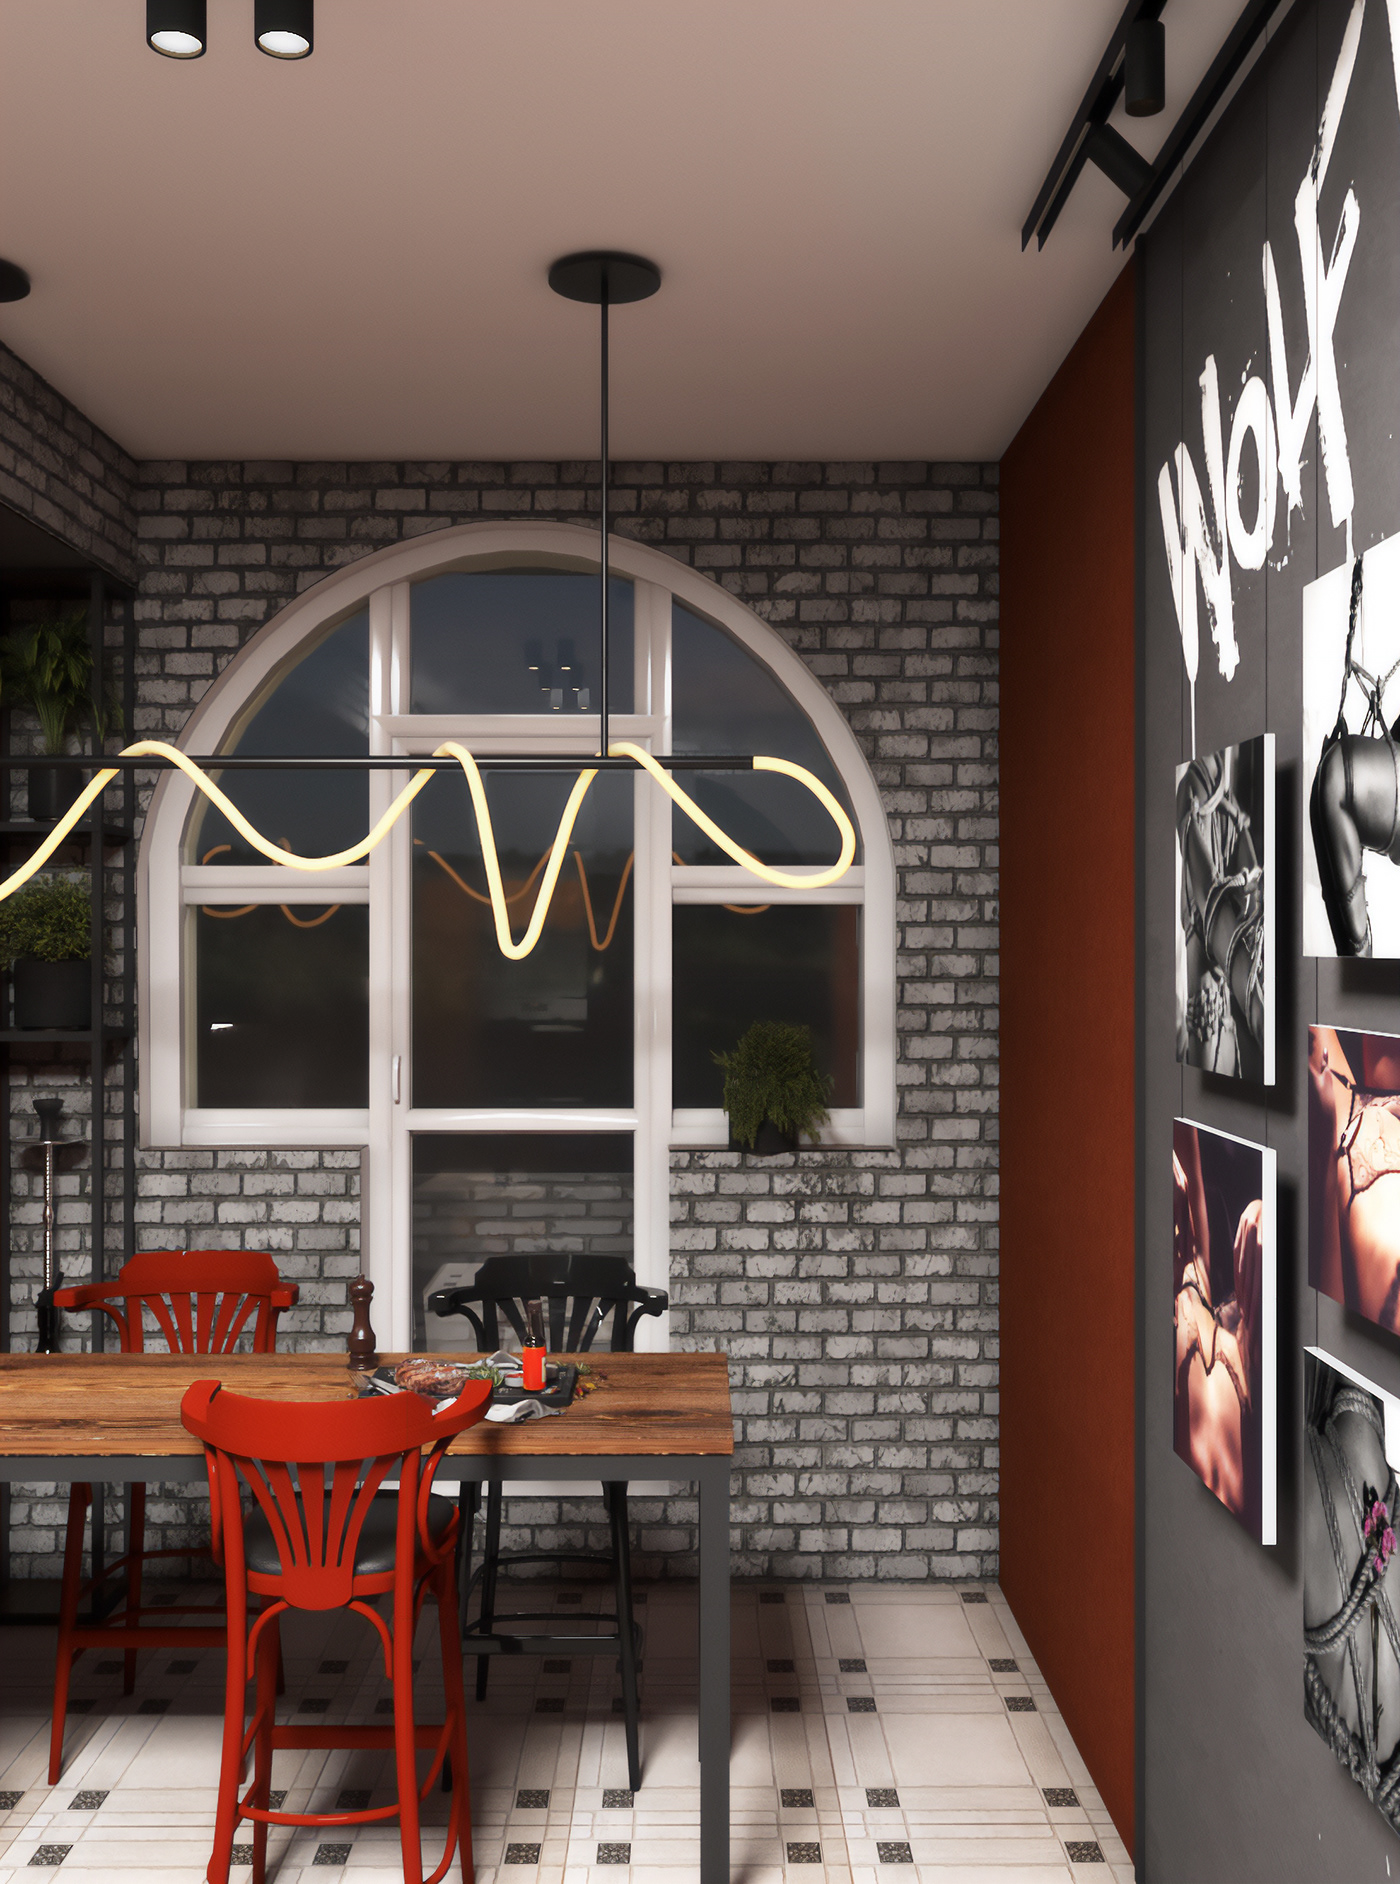 3D 3ds max architecture corona render  Interior interior design  LOFT loft interior loft kitchen tile